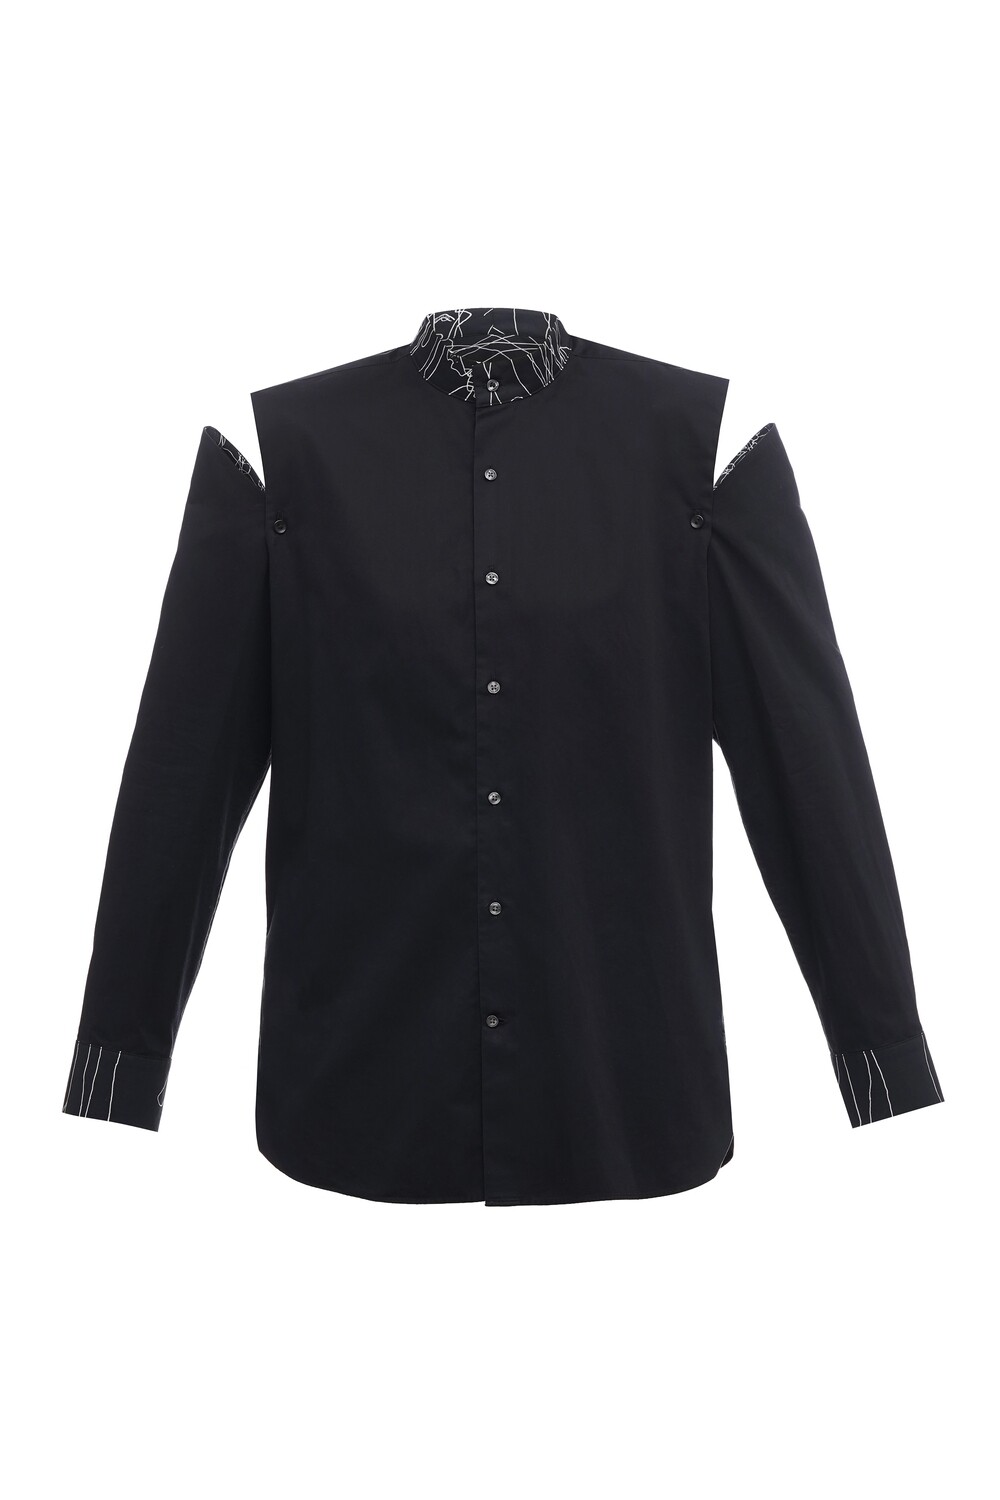 Upcycle black oversize shirt